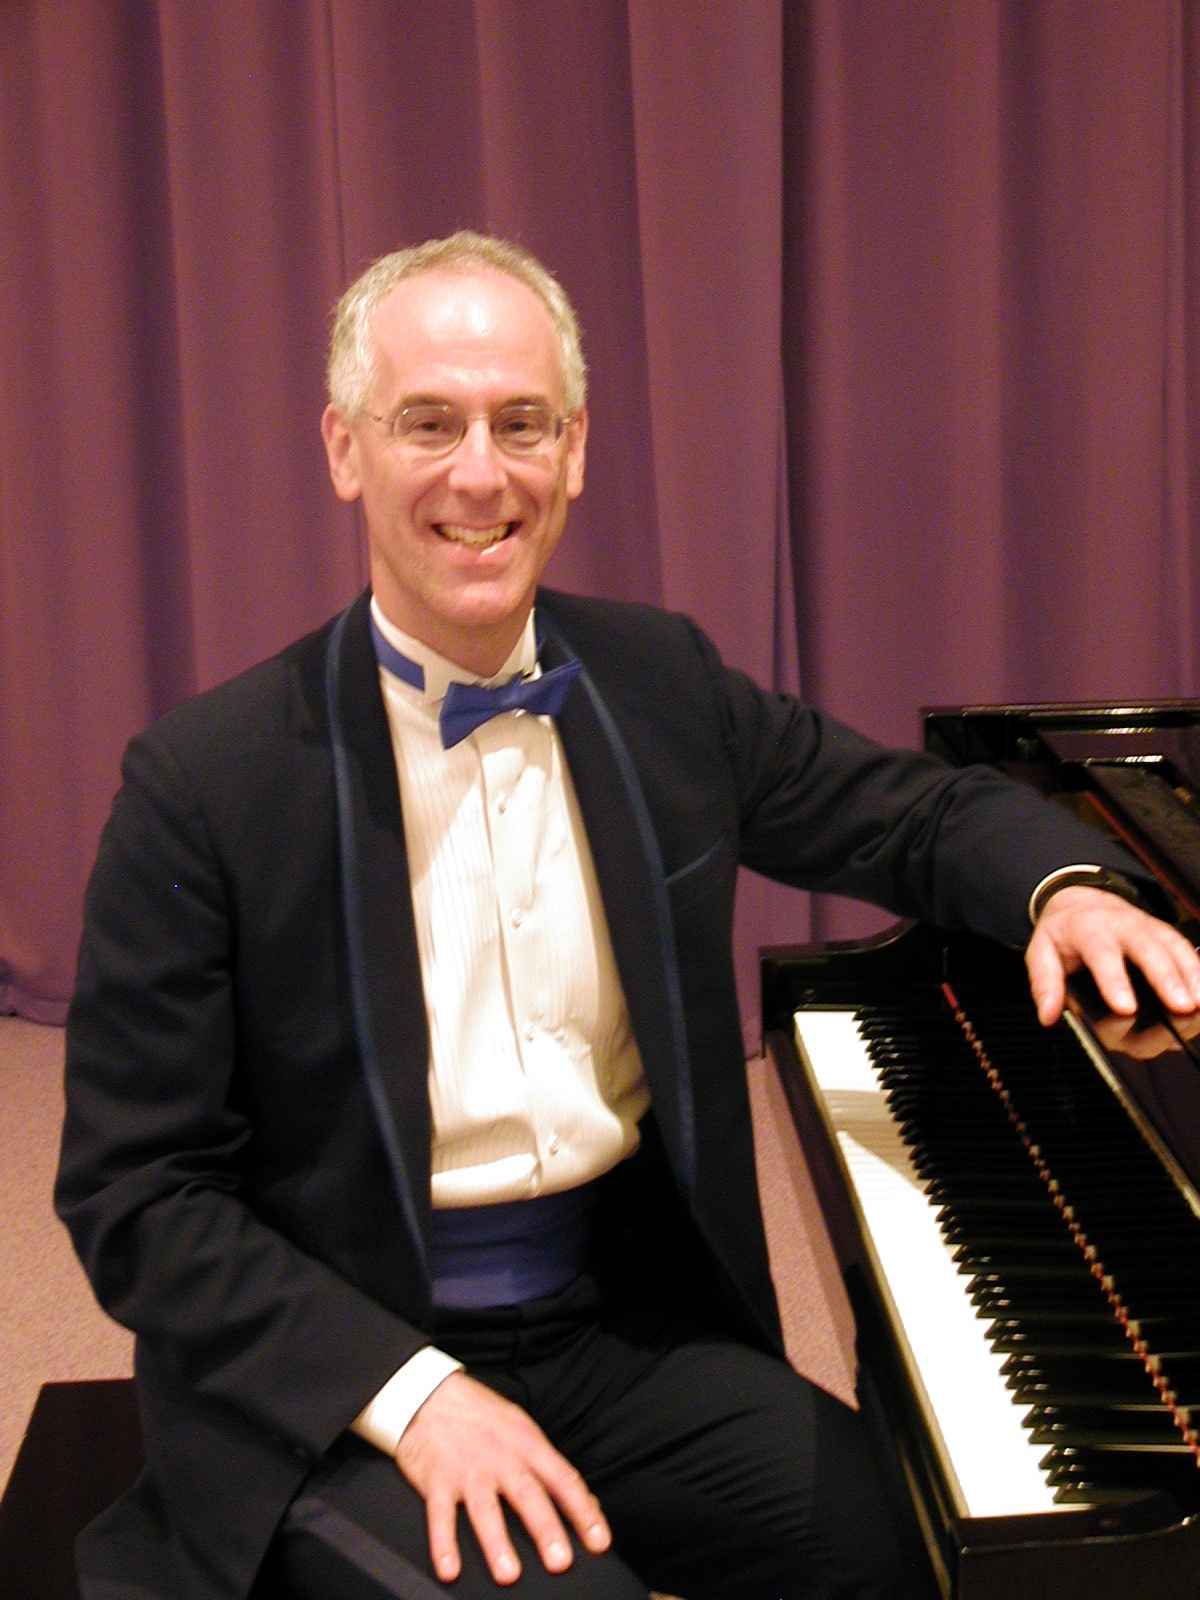 Phil Mandel at the piano - www.seniorsentertainer.com